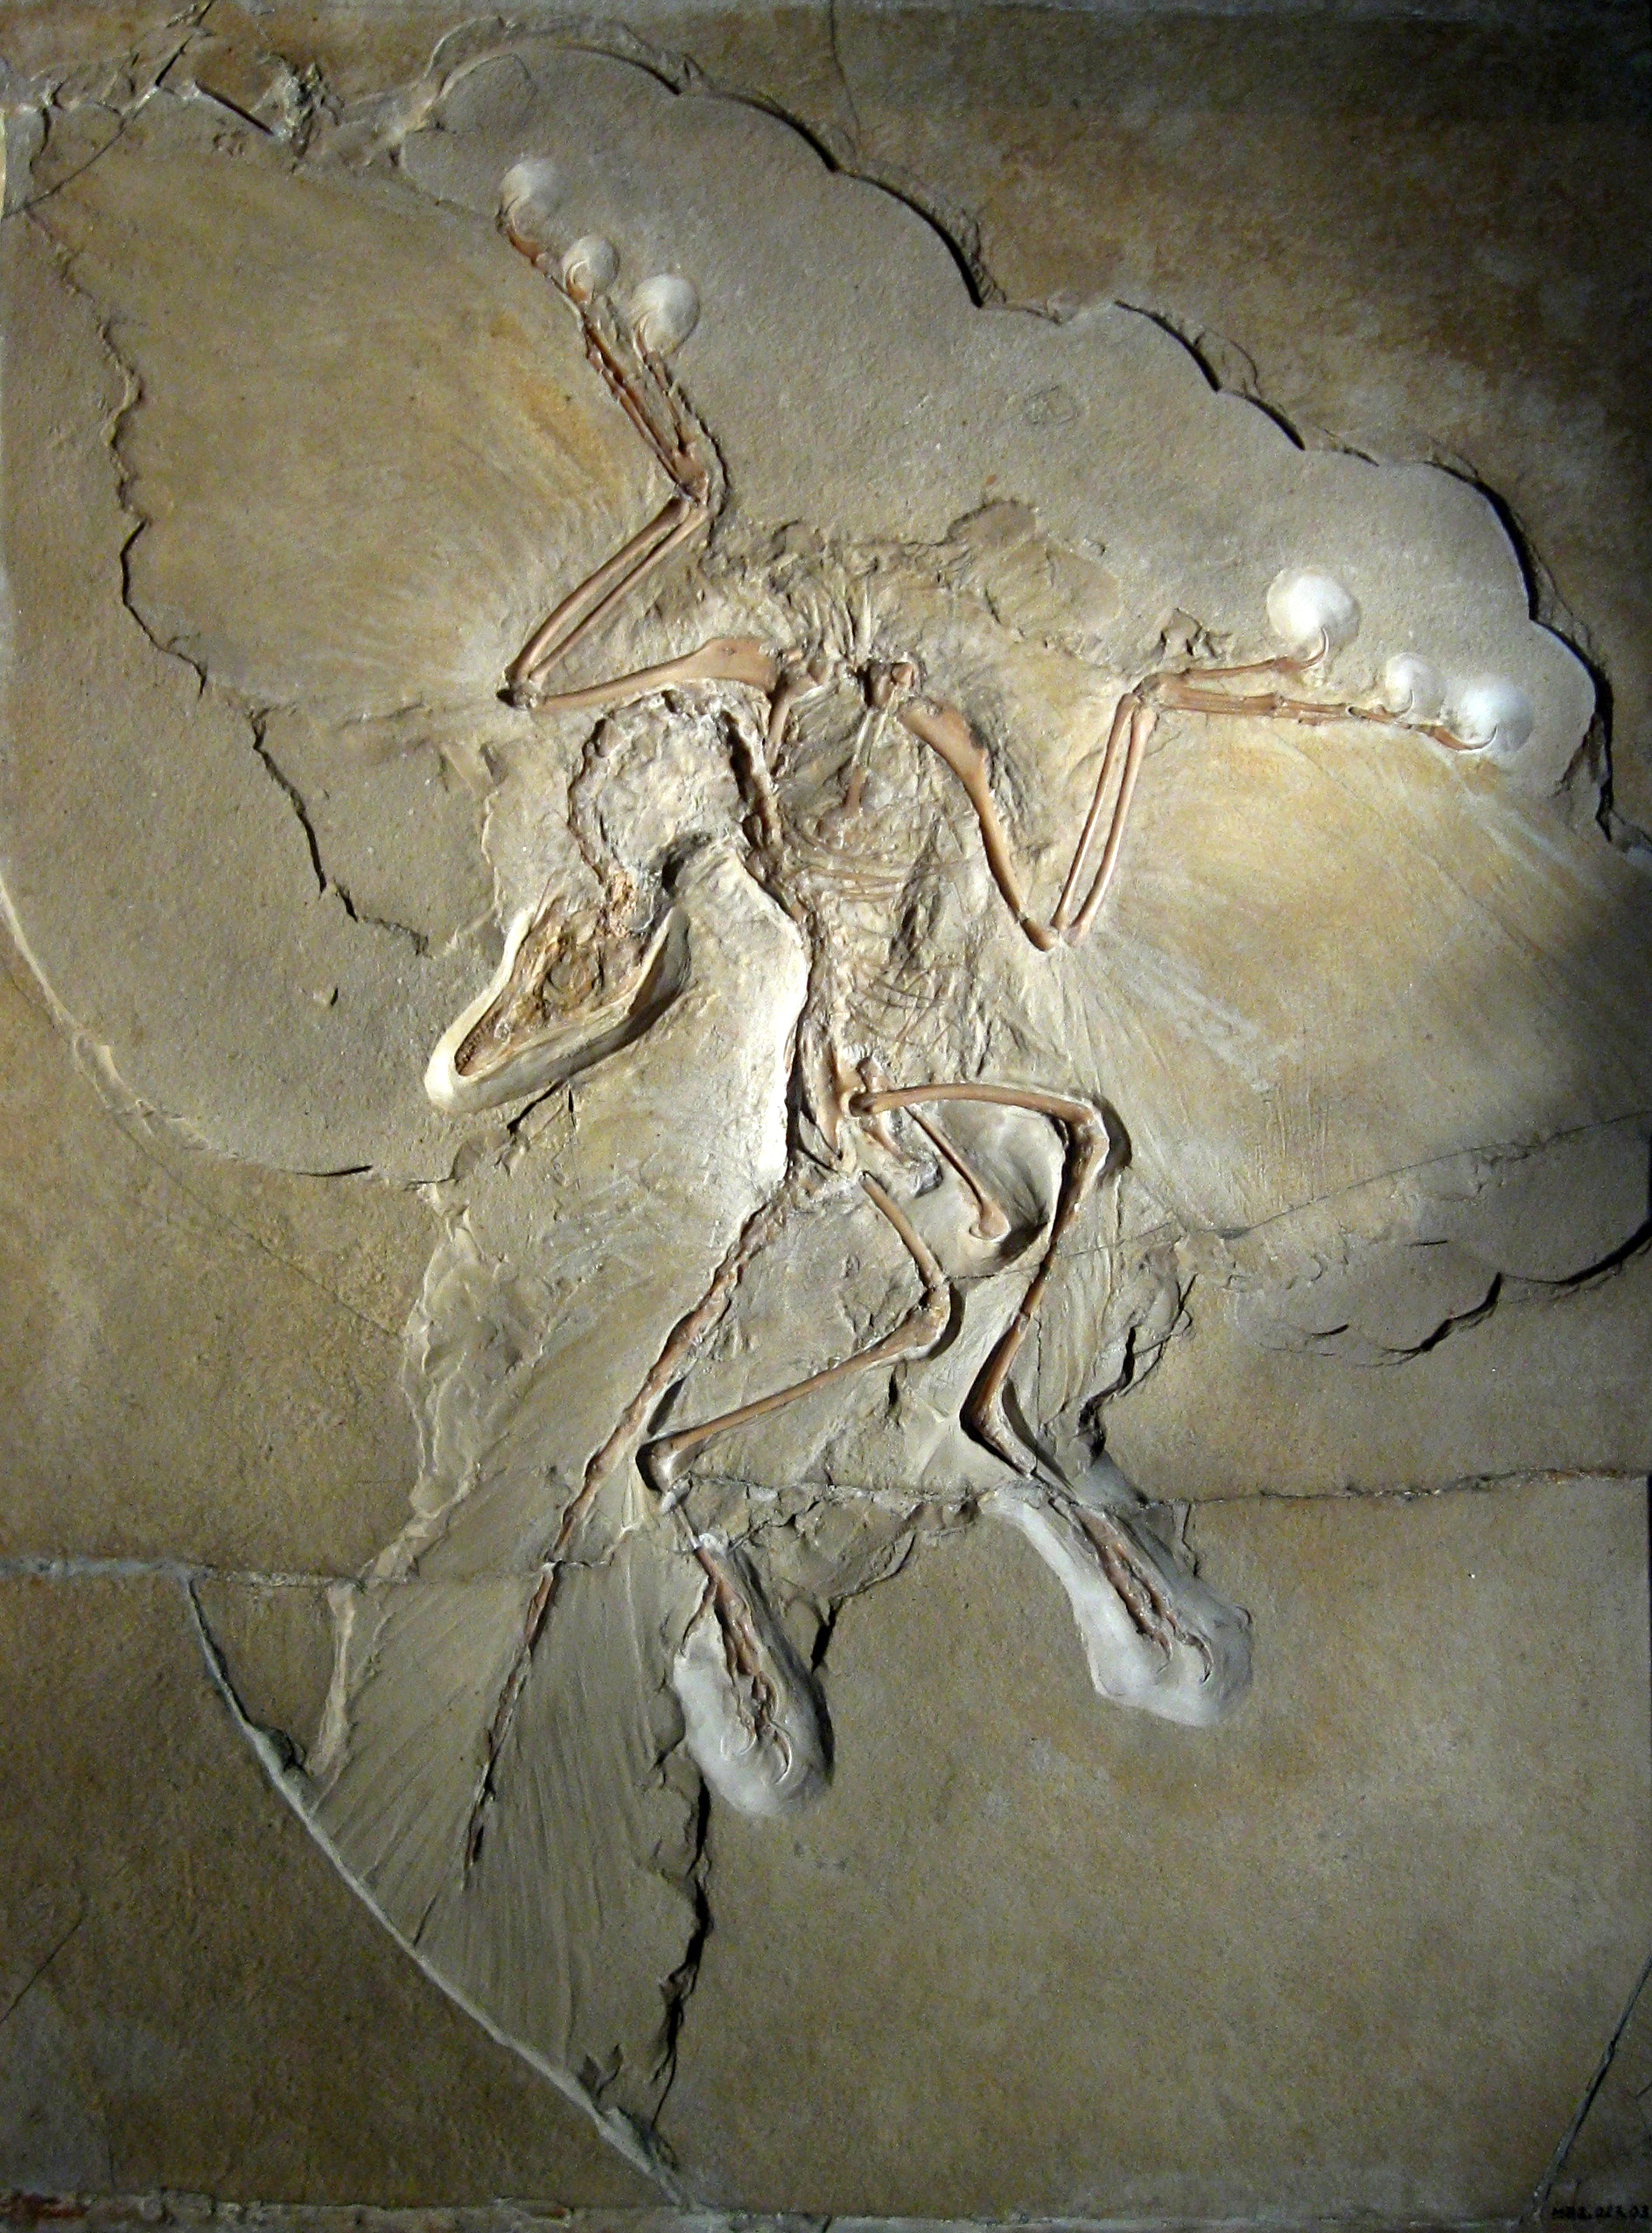 Troška nostalgie - Archeopteryx - nejznámější ze včech praptáků (přesněji neptačí dinosaurus). Víme toho o něm už hodně. Například, že byl velikosti holuba a na území dnešního Bavorska se naparoval svým bílo-černým pruhováním. I když je o odeset mili